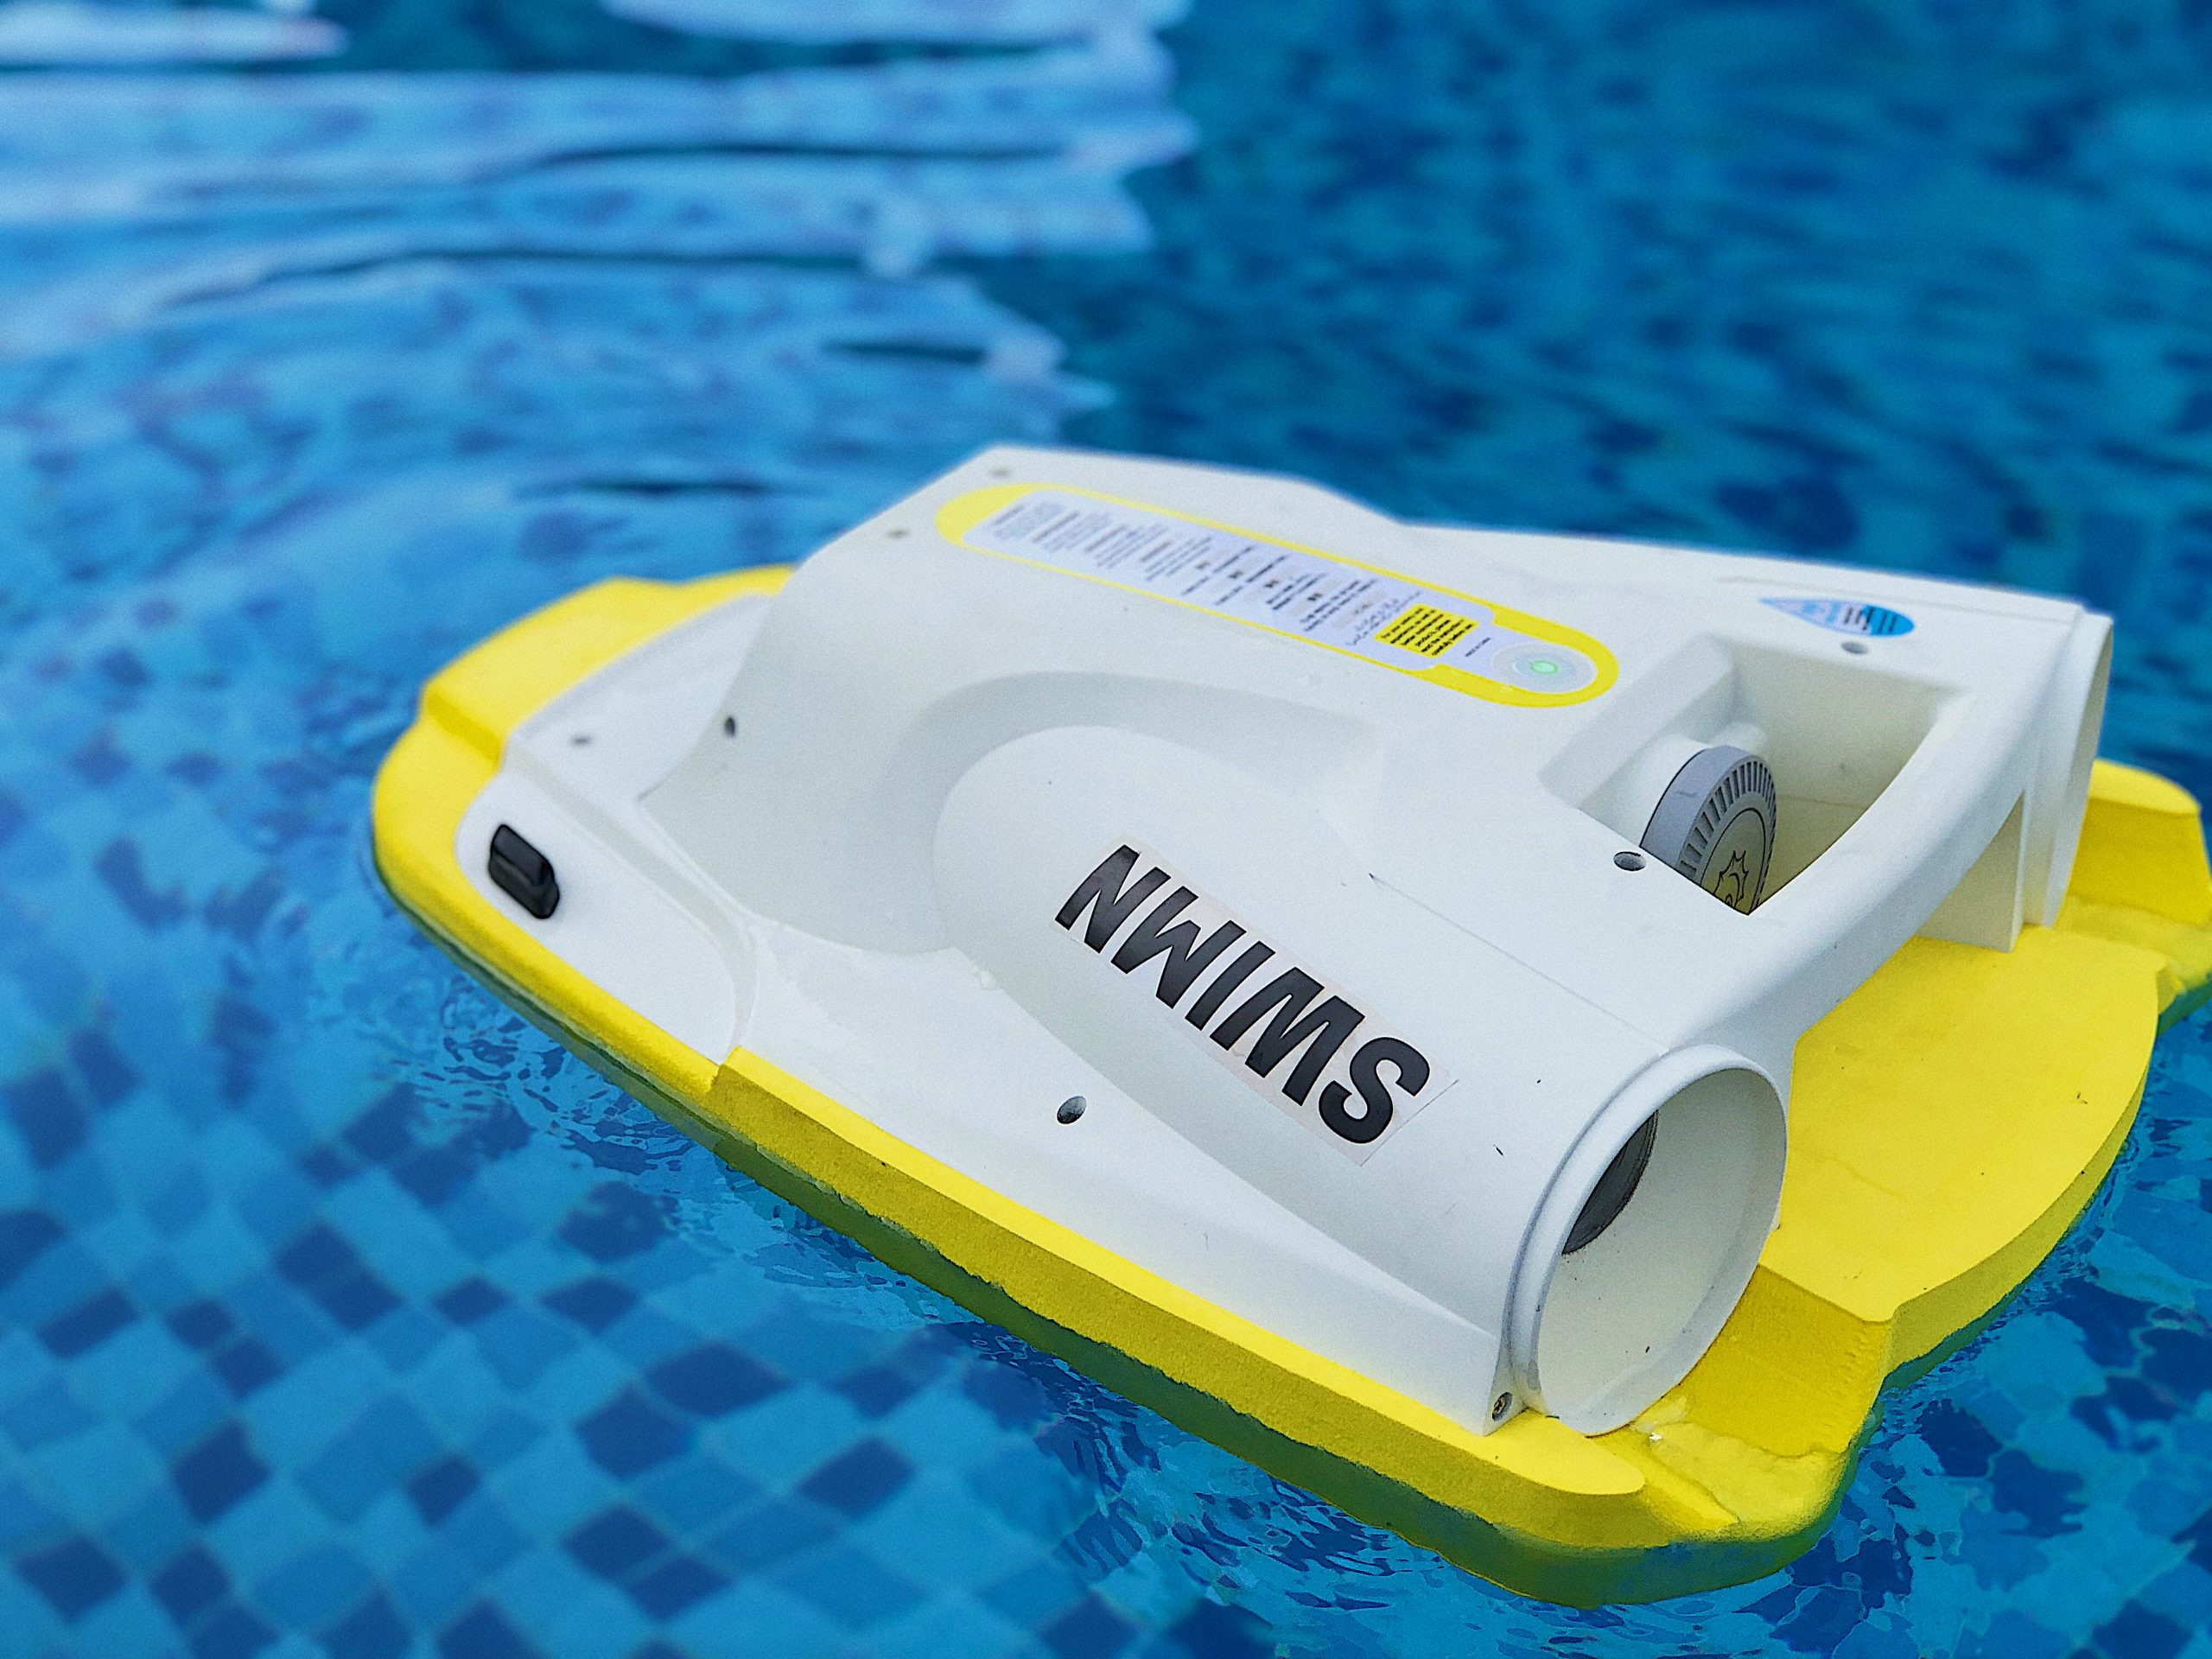 Водный скутер Swimn s1 Yellow (Swimn-s1). Доска для плавания с мотором. Штука для плавания с мотором. Доска для плавания с моторчиком.